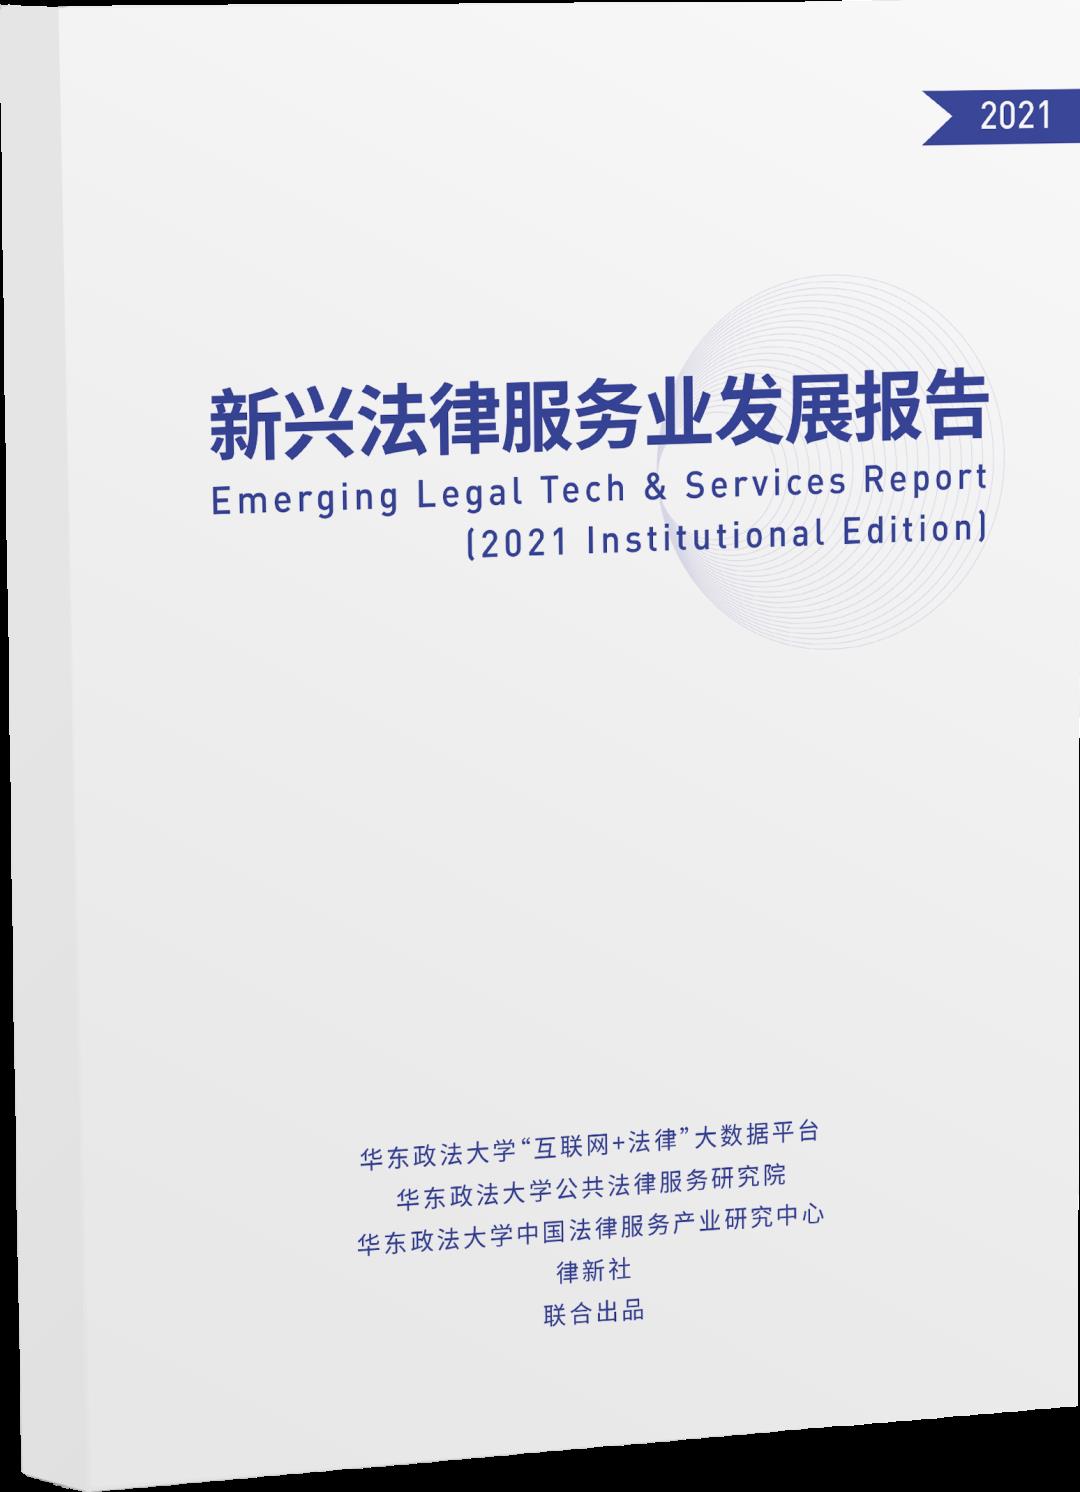 上海税收筹划,近期资讯